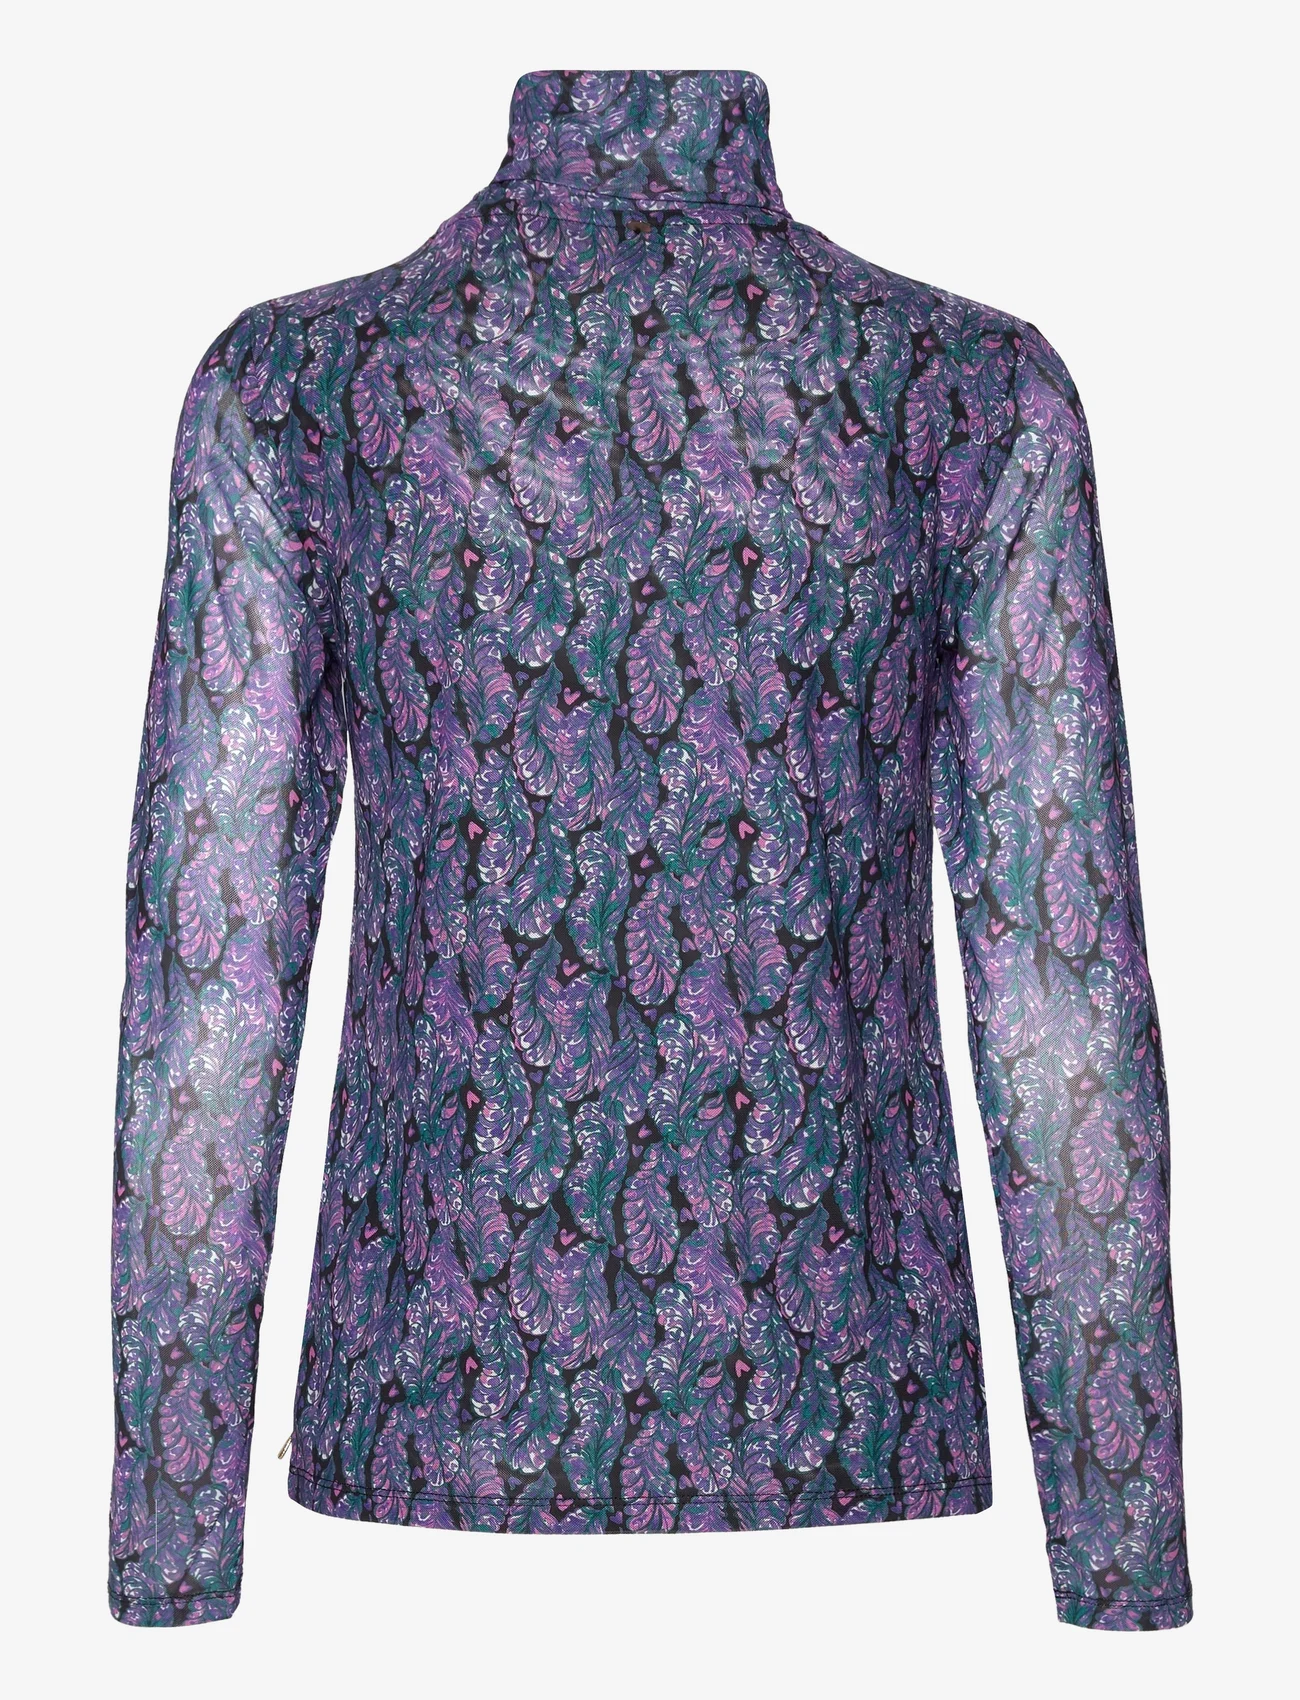 Fabienne Chapot - Michou Top - blouses met lange mouwen - antra/poppy purple - 1